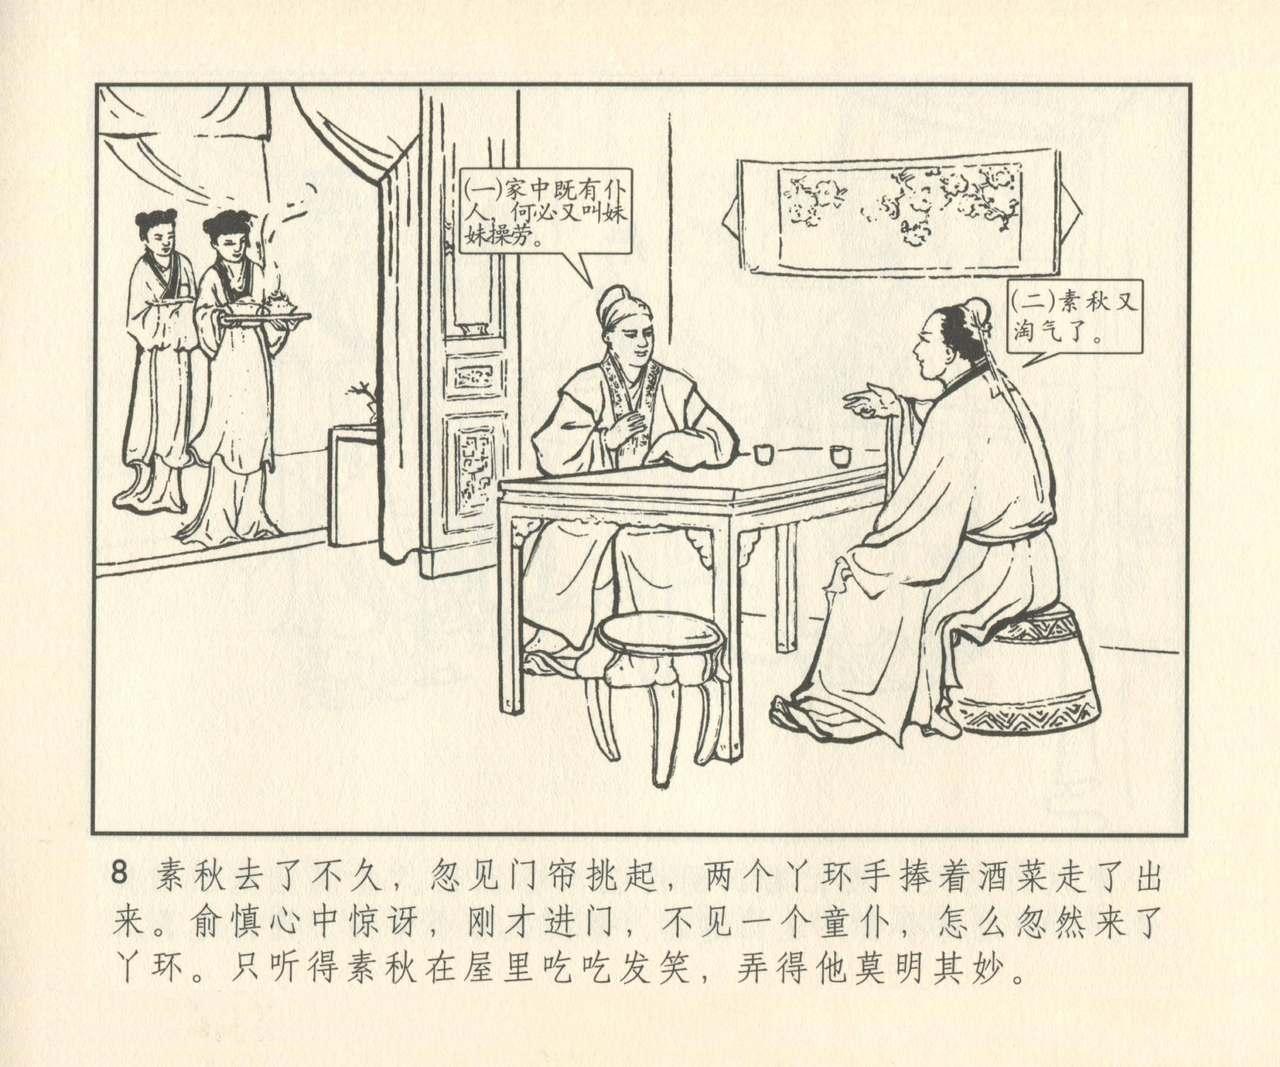 聊斋志异 张玮等绘 天津人民美术出版社 卷二十一 ~ 三十 288